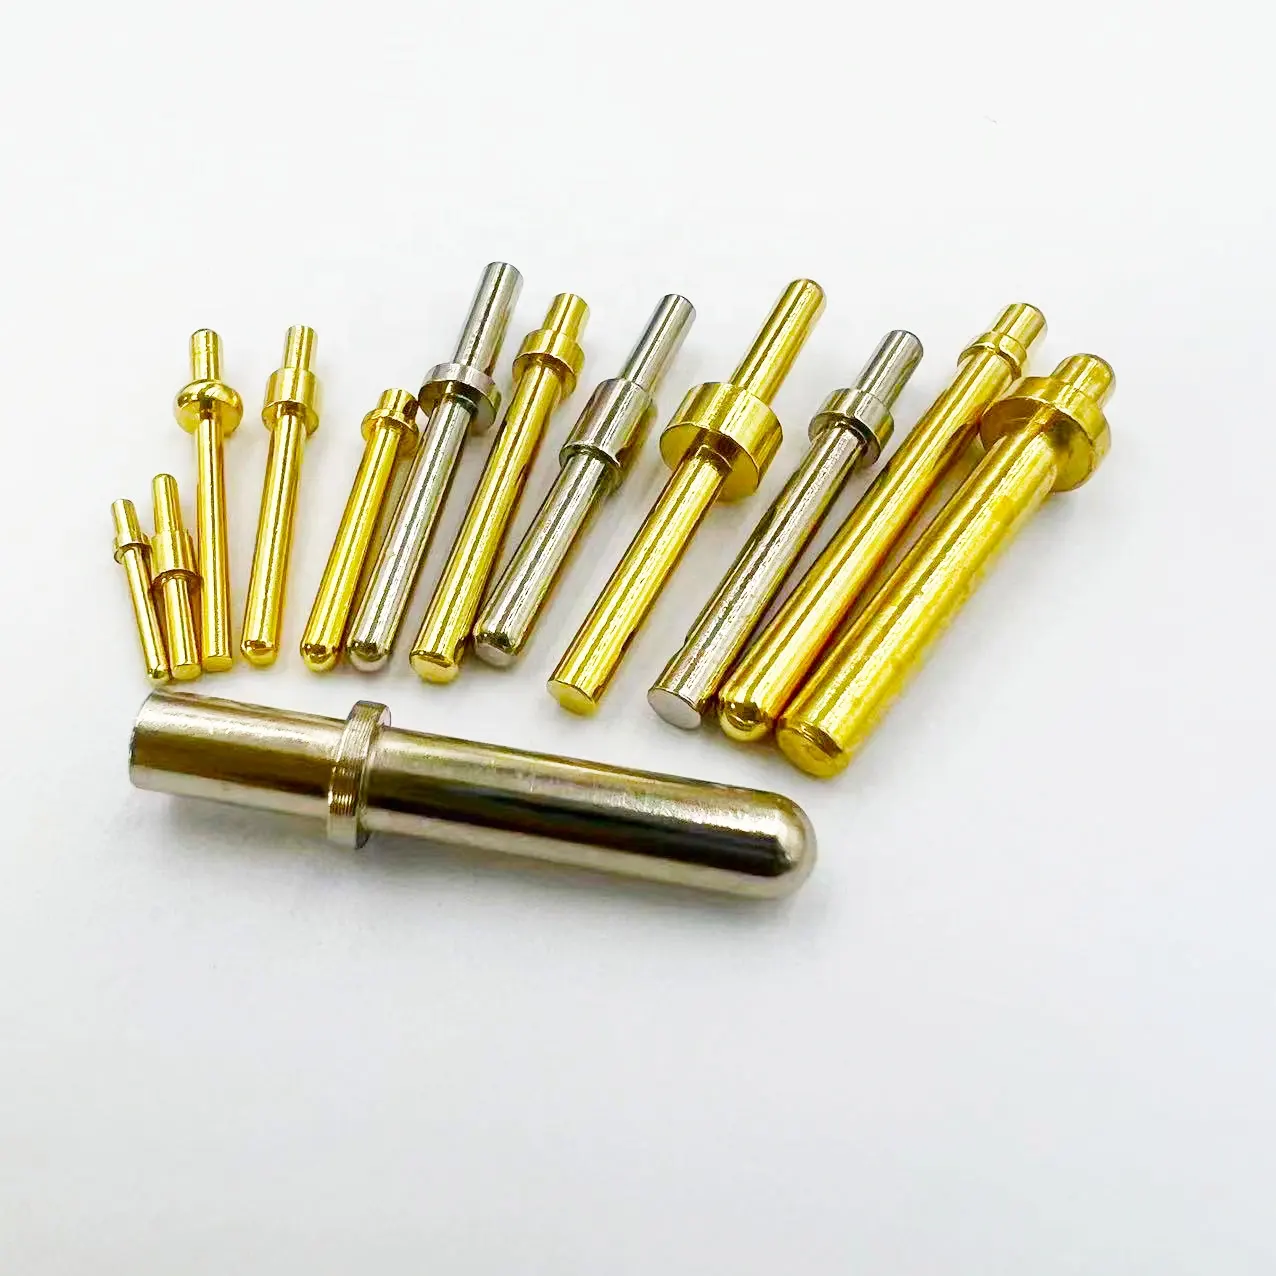 Usine de fabrication de broches en cuivre massif T-pin connecteur à broches croisées broche de test borne de colonne en cuivre conductrice.